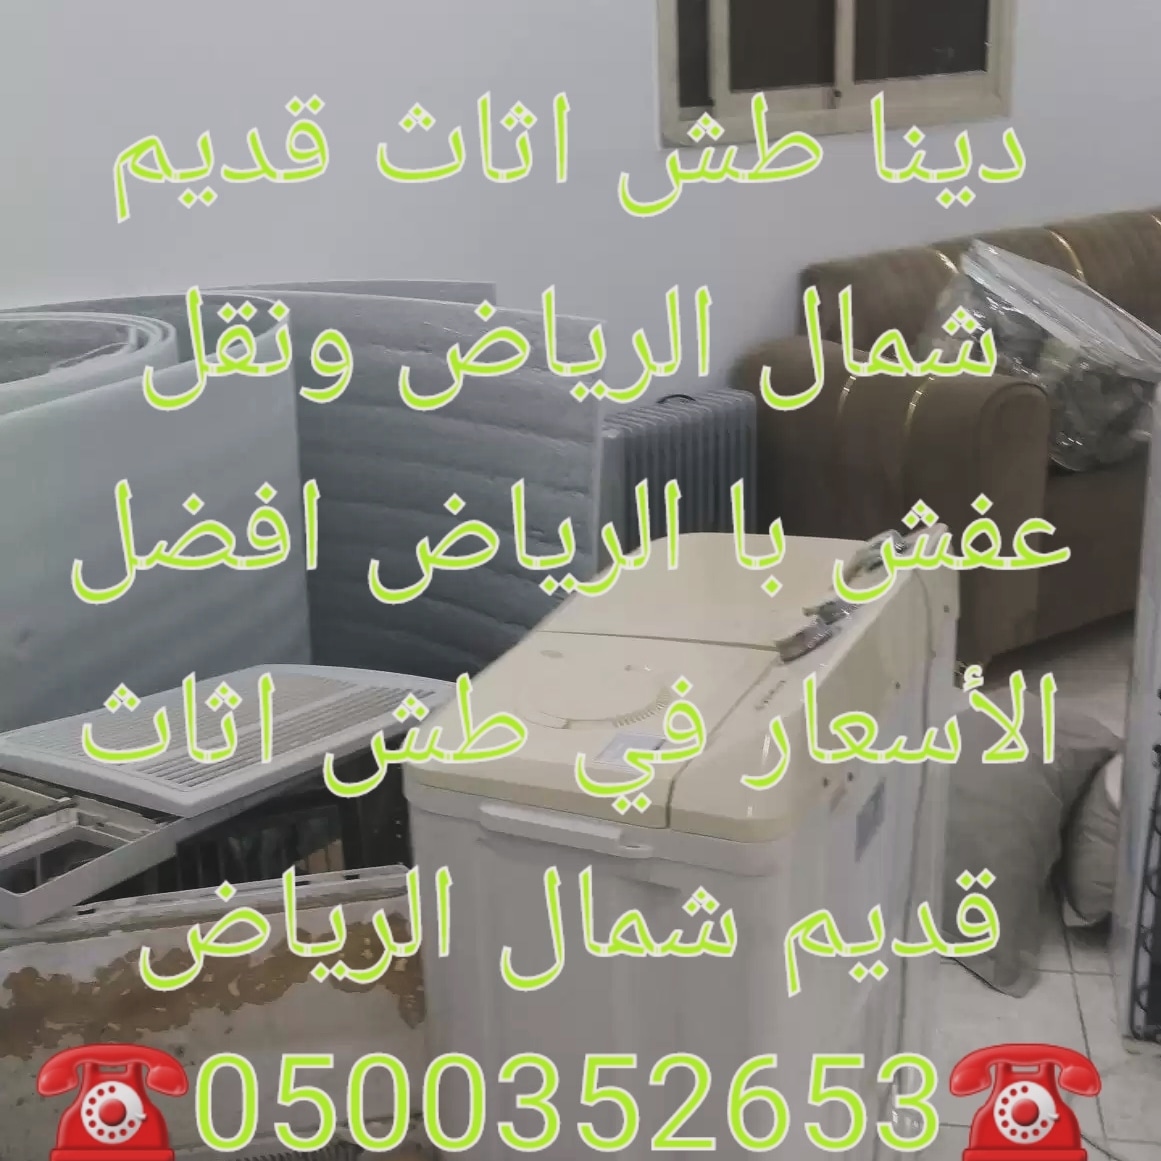 دينا طش اثاث قديم الرياض حي الربيع 0500352653